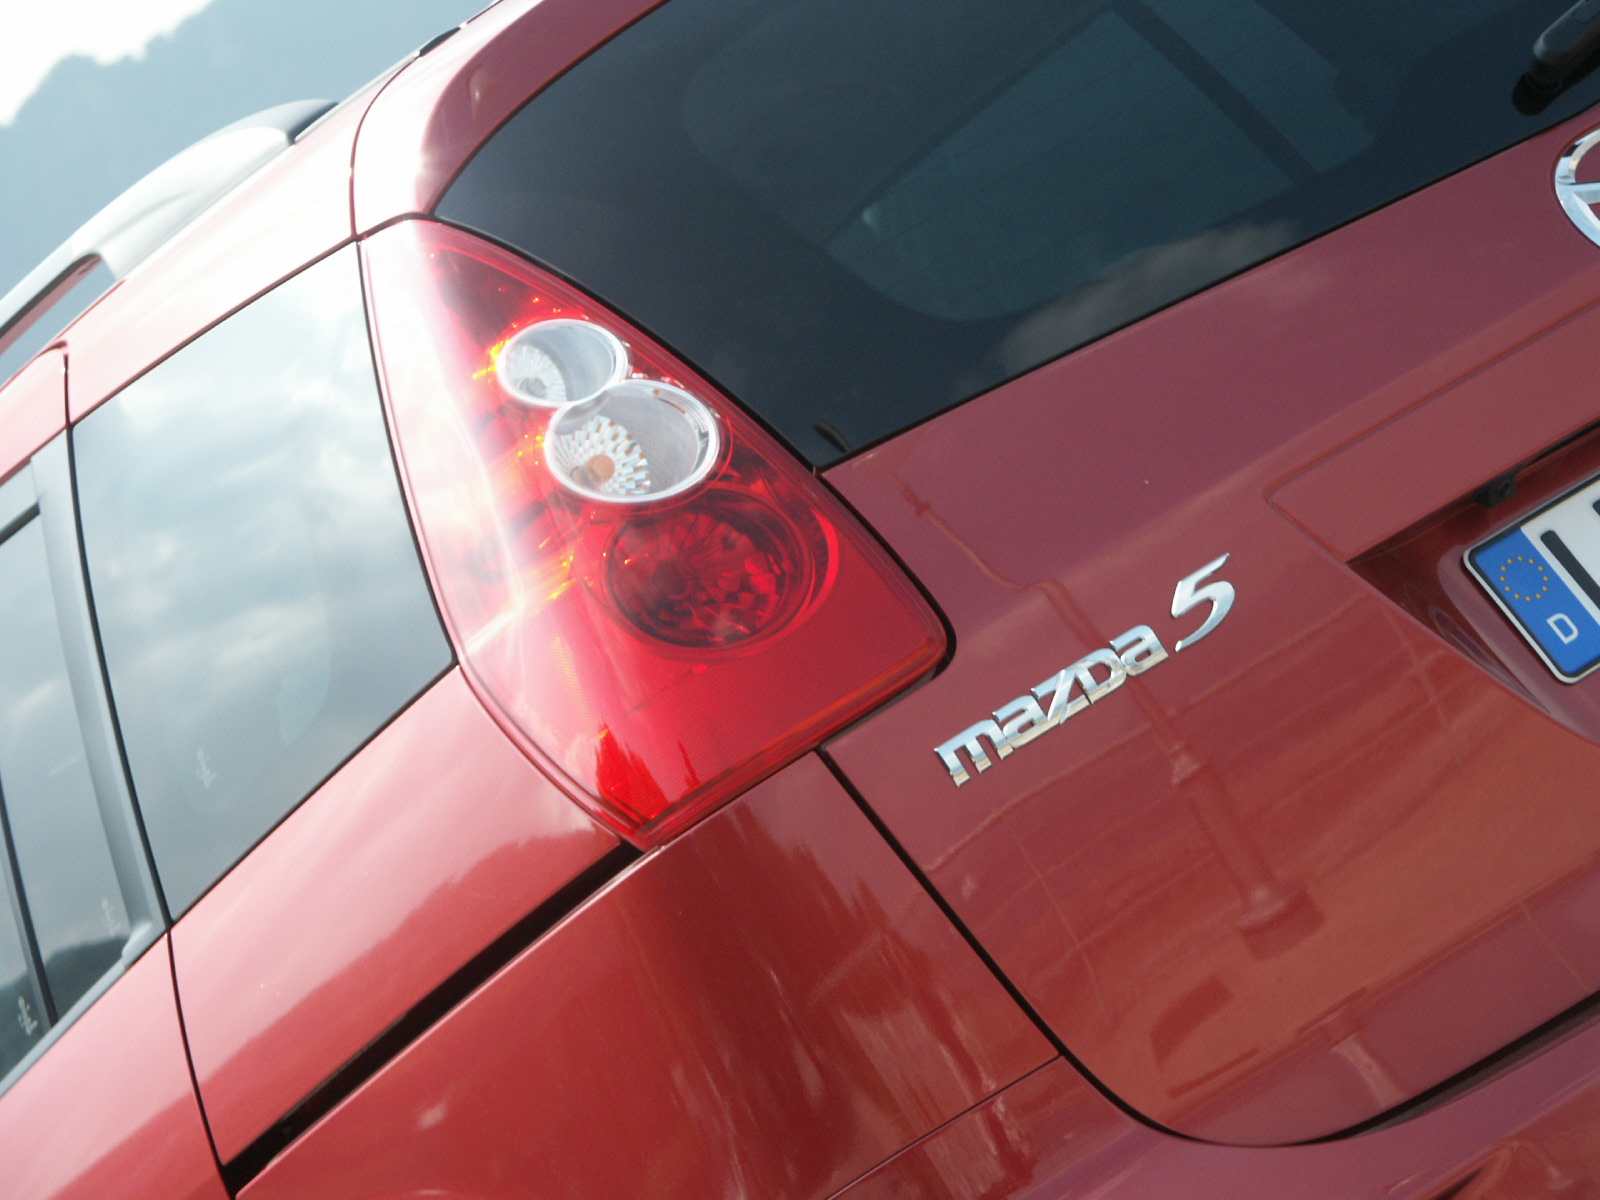  - Mazda 5